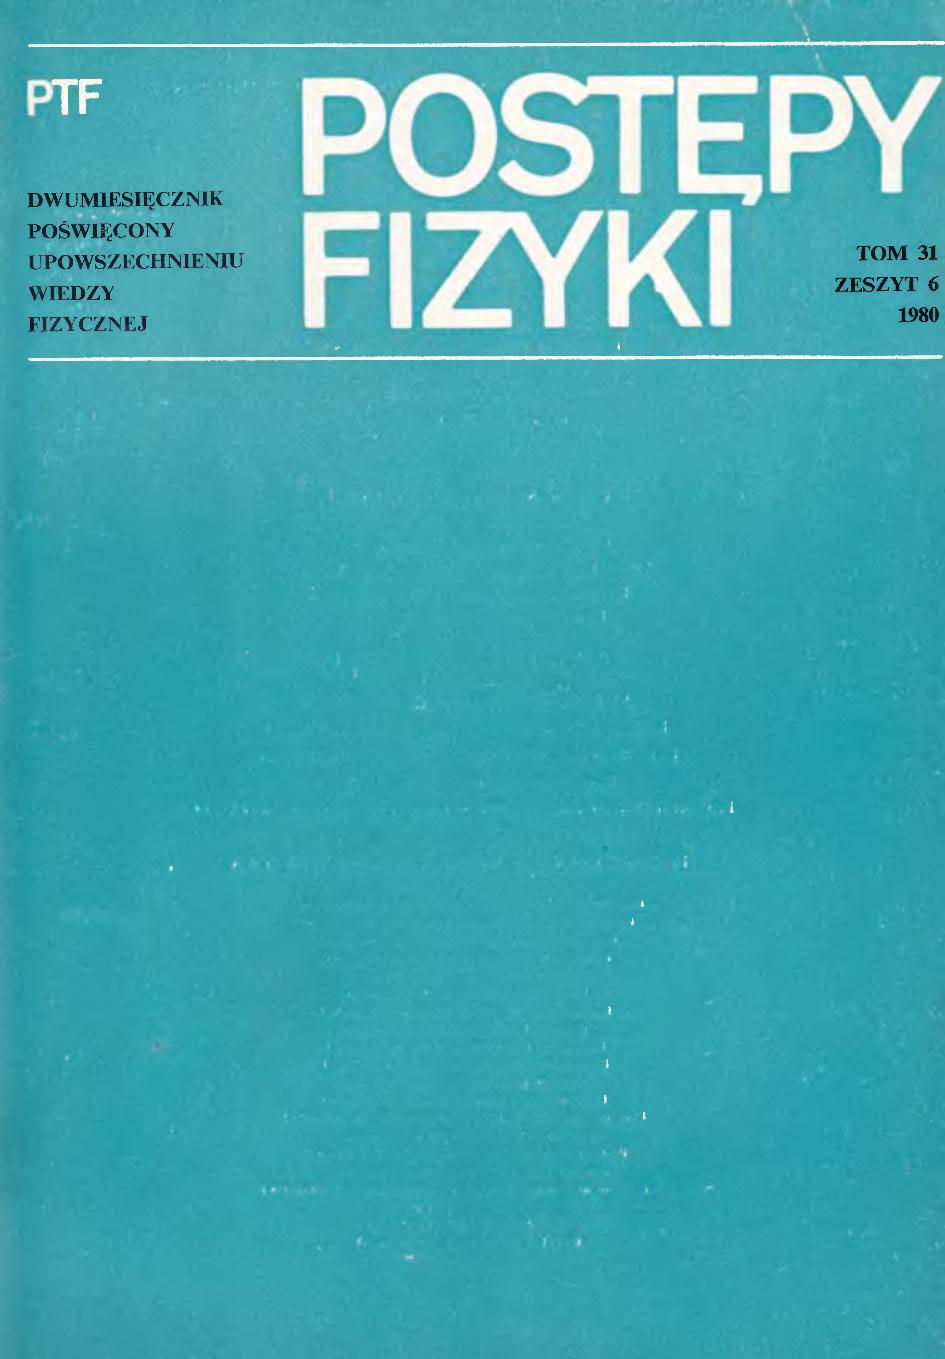 Postępy Fizyki 31 (6) 1980